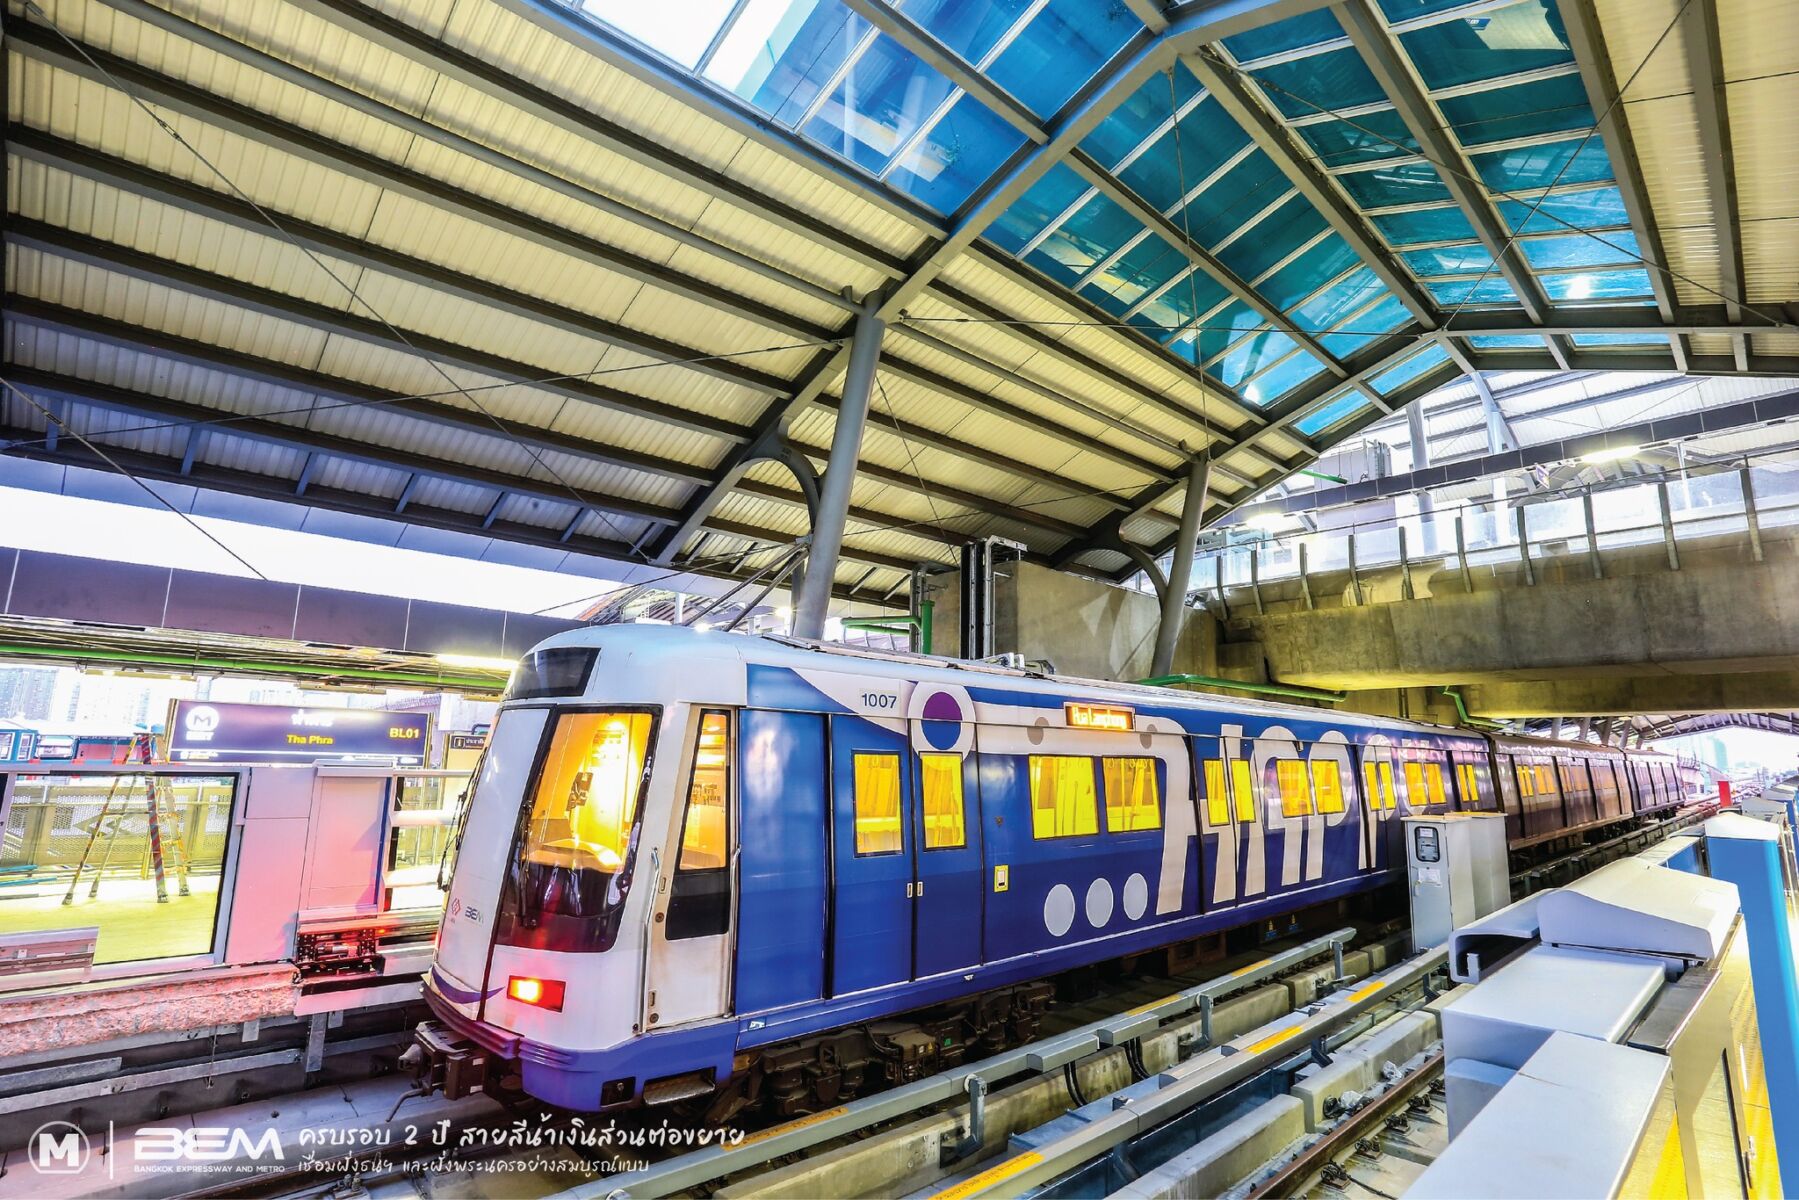 ค่ารถไฟฟ้า Mrt สายสีน้ำเงิน ตรึงราคาเดิมถึงสิ้นปี 2565 | Thaiger ข่าวไทย